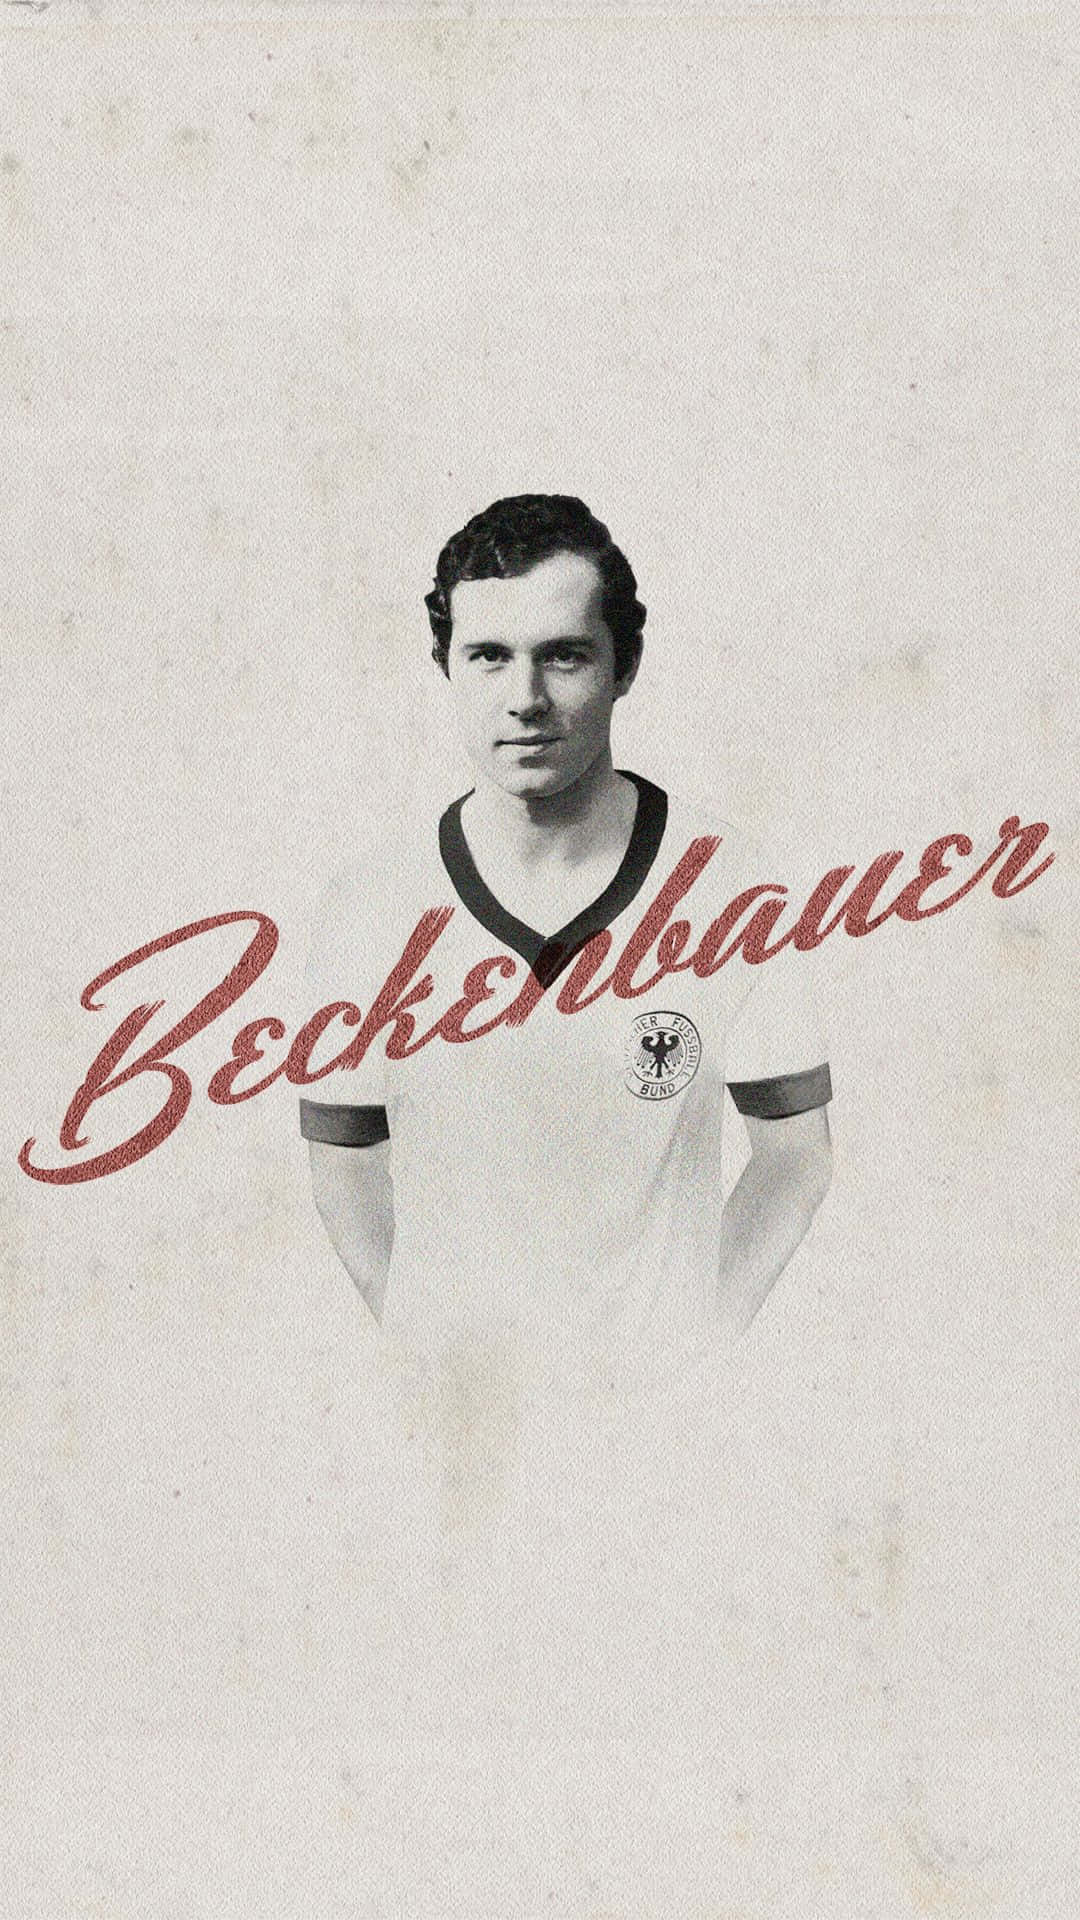 The Legendary Franz Beckenbauer in Digital Art Wallpaper